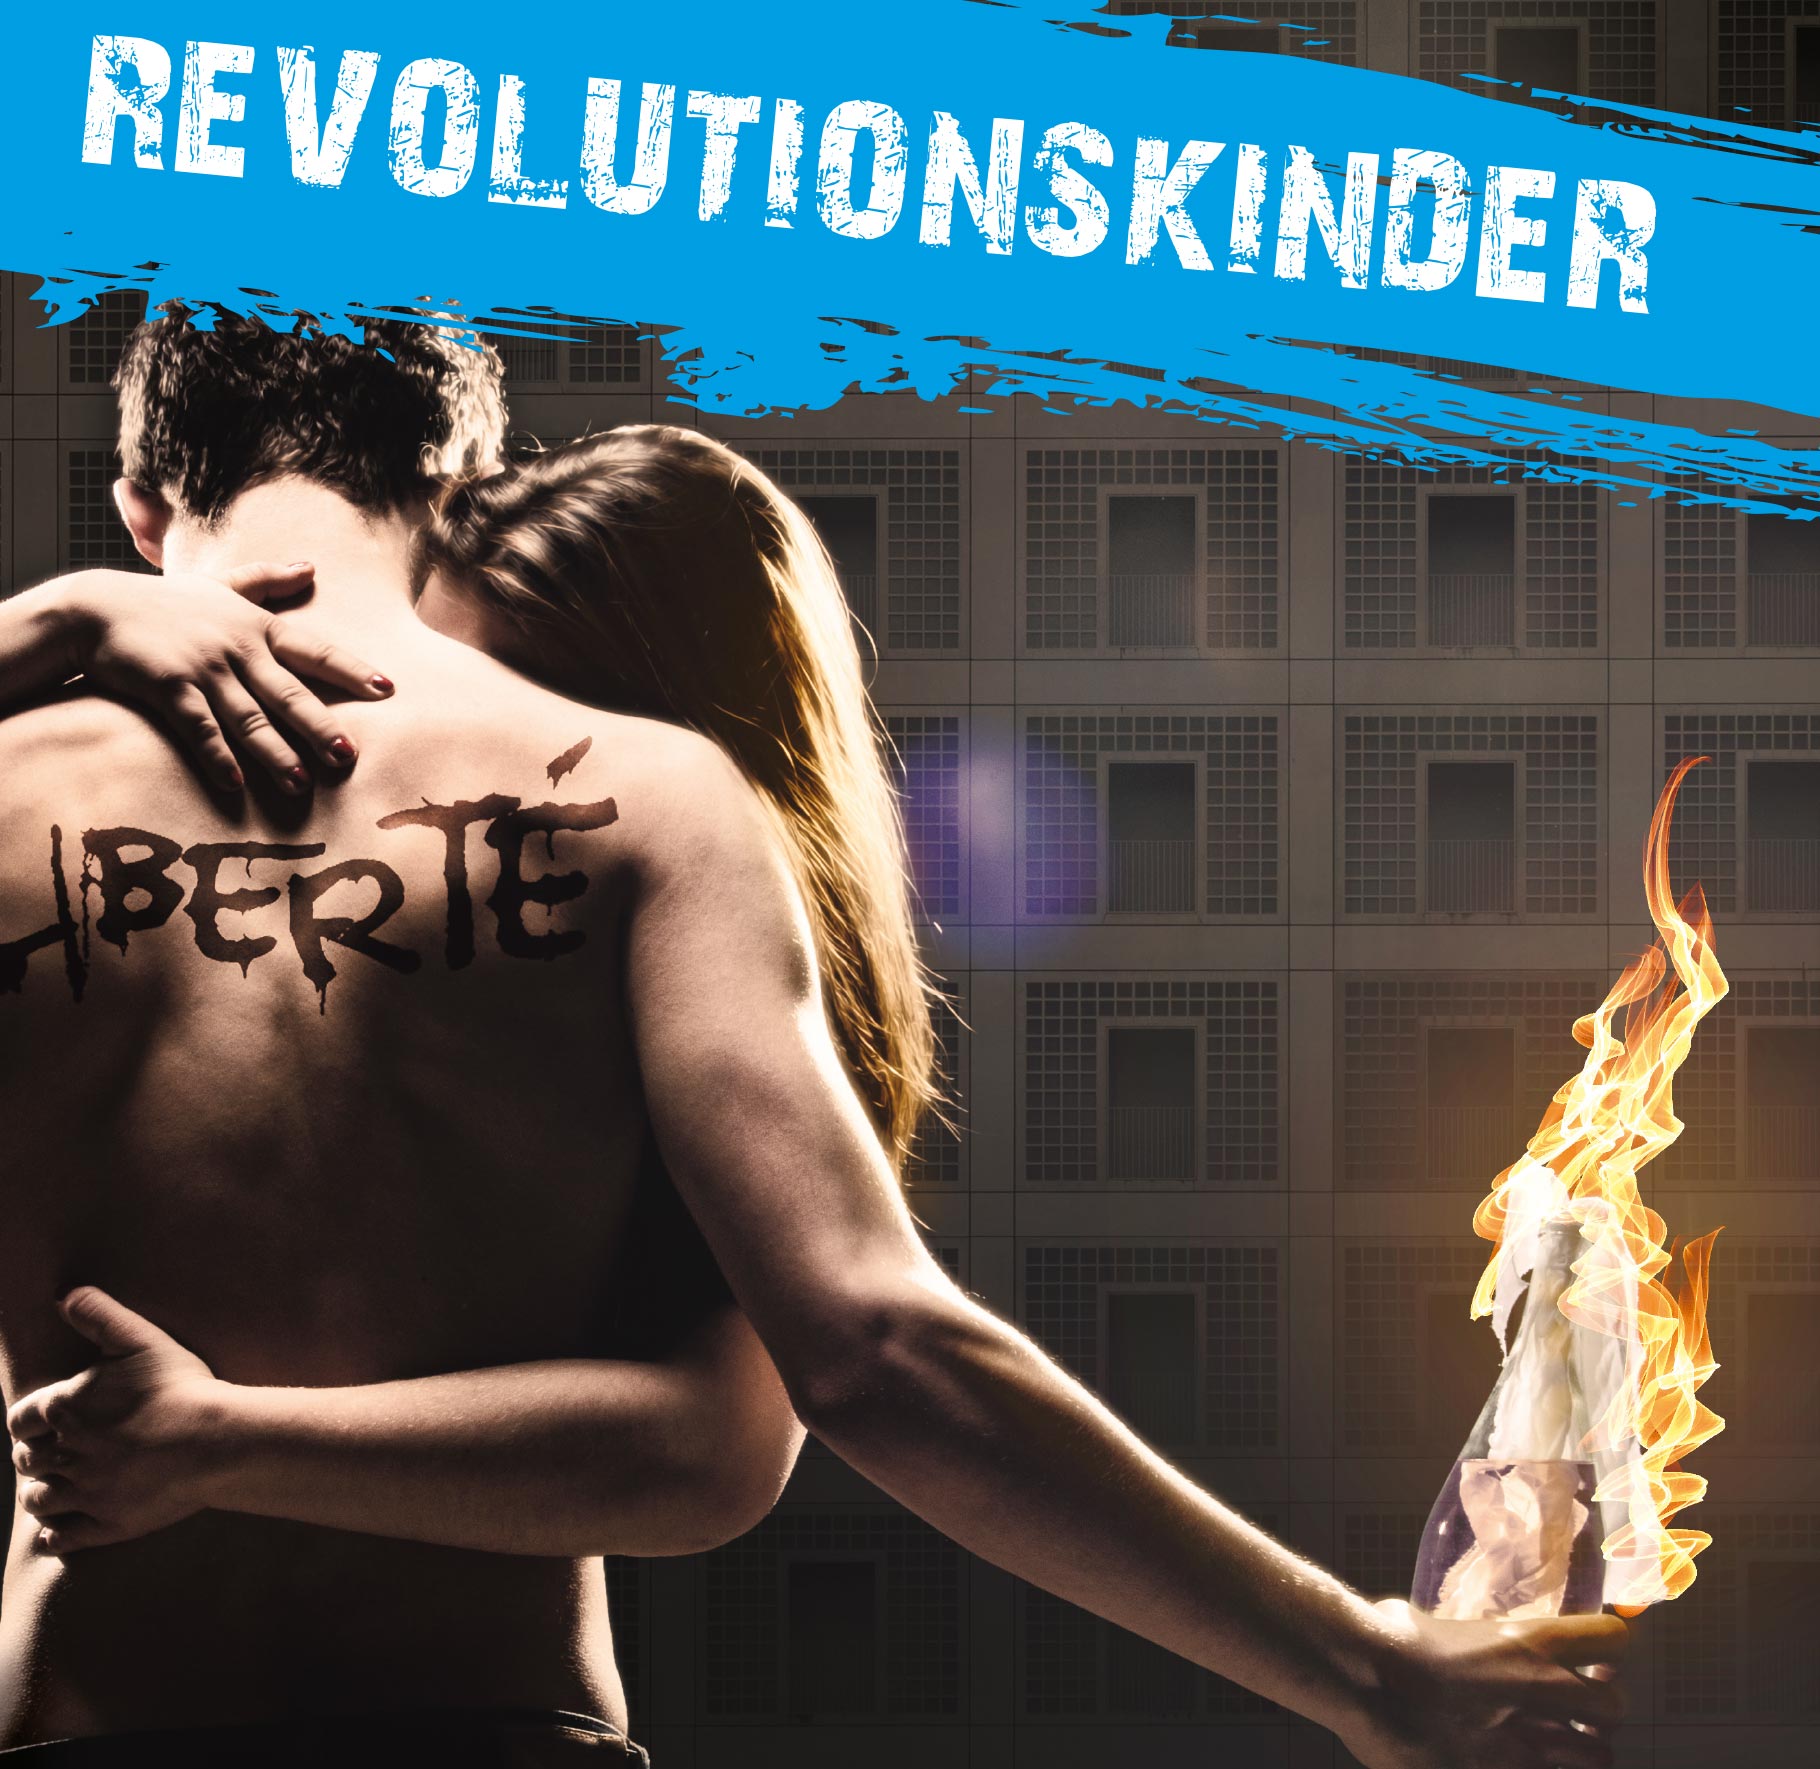 Visual zu 'Revolutionskinder': Ein junges Paar umarmt sich. Auf dem nackten Rücken des Mannes, der einen brennenden Molotow-Cocktail in der Hand hält, steht 'Liberté' geschrieben.